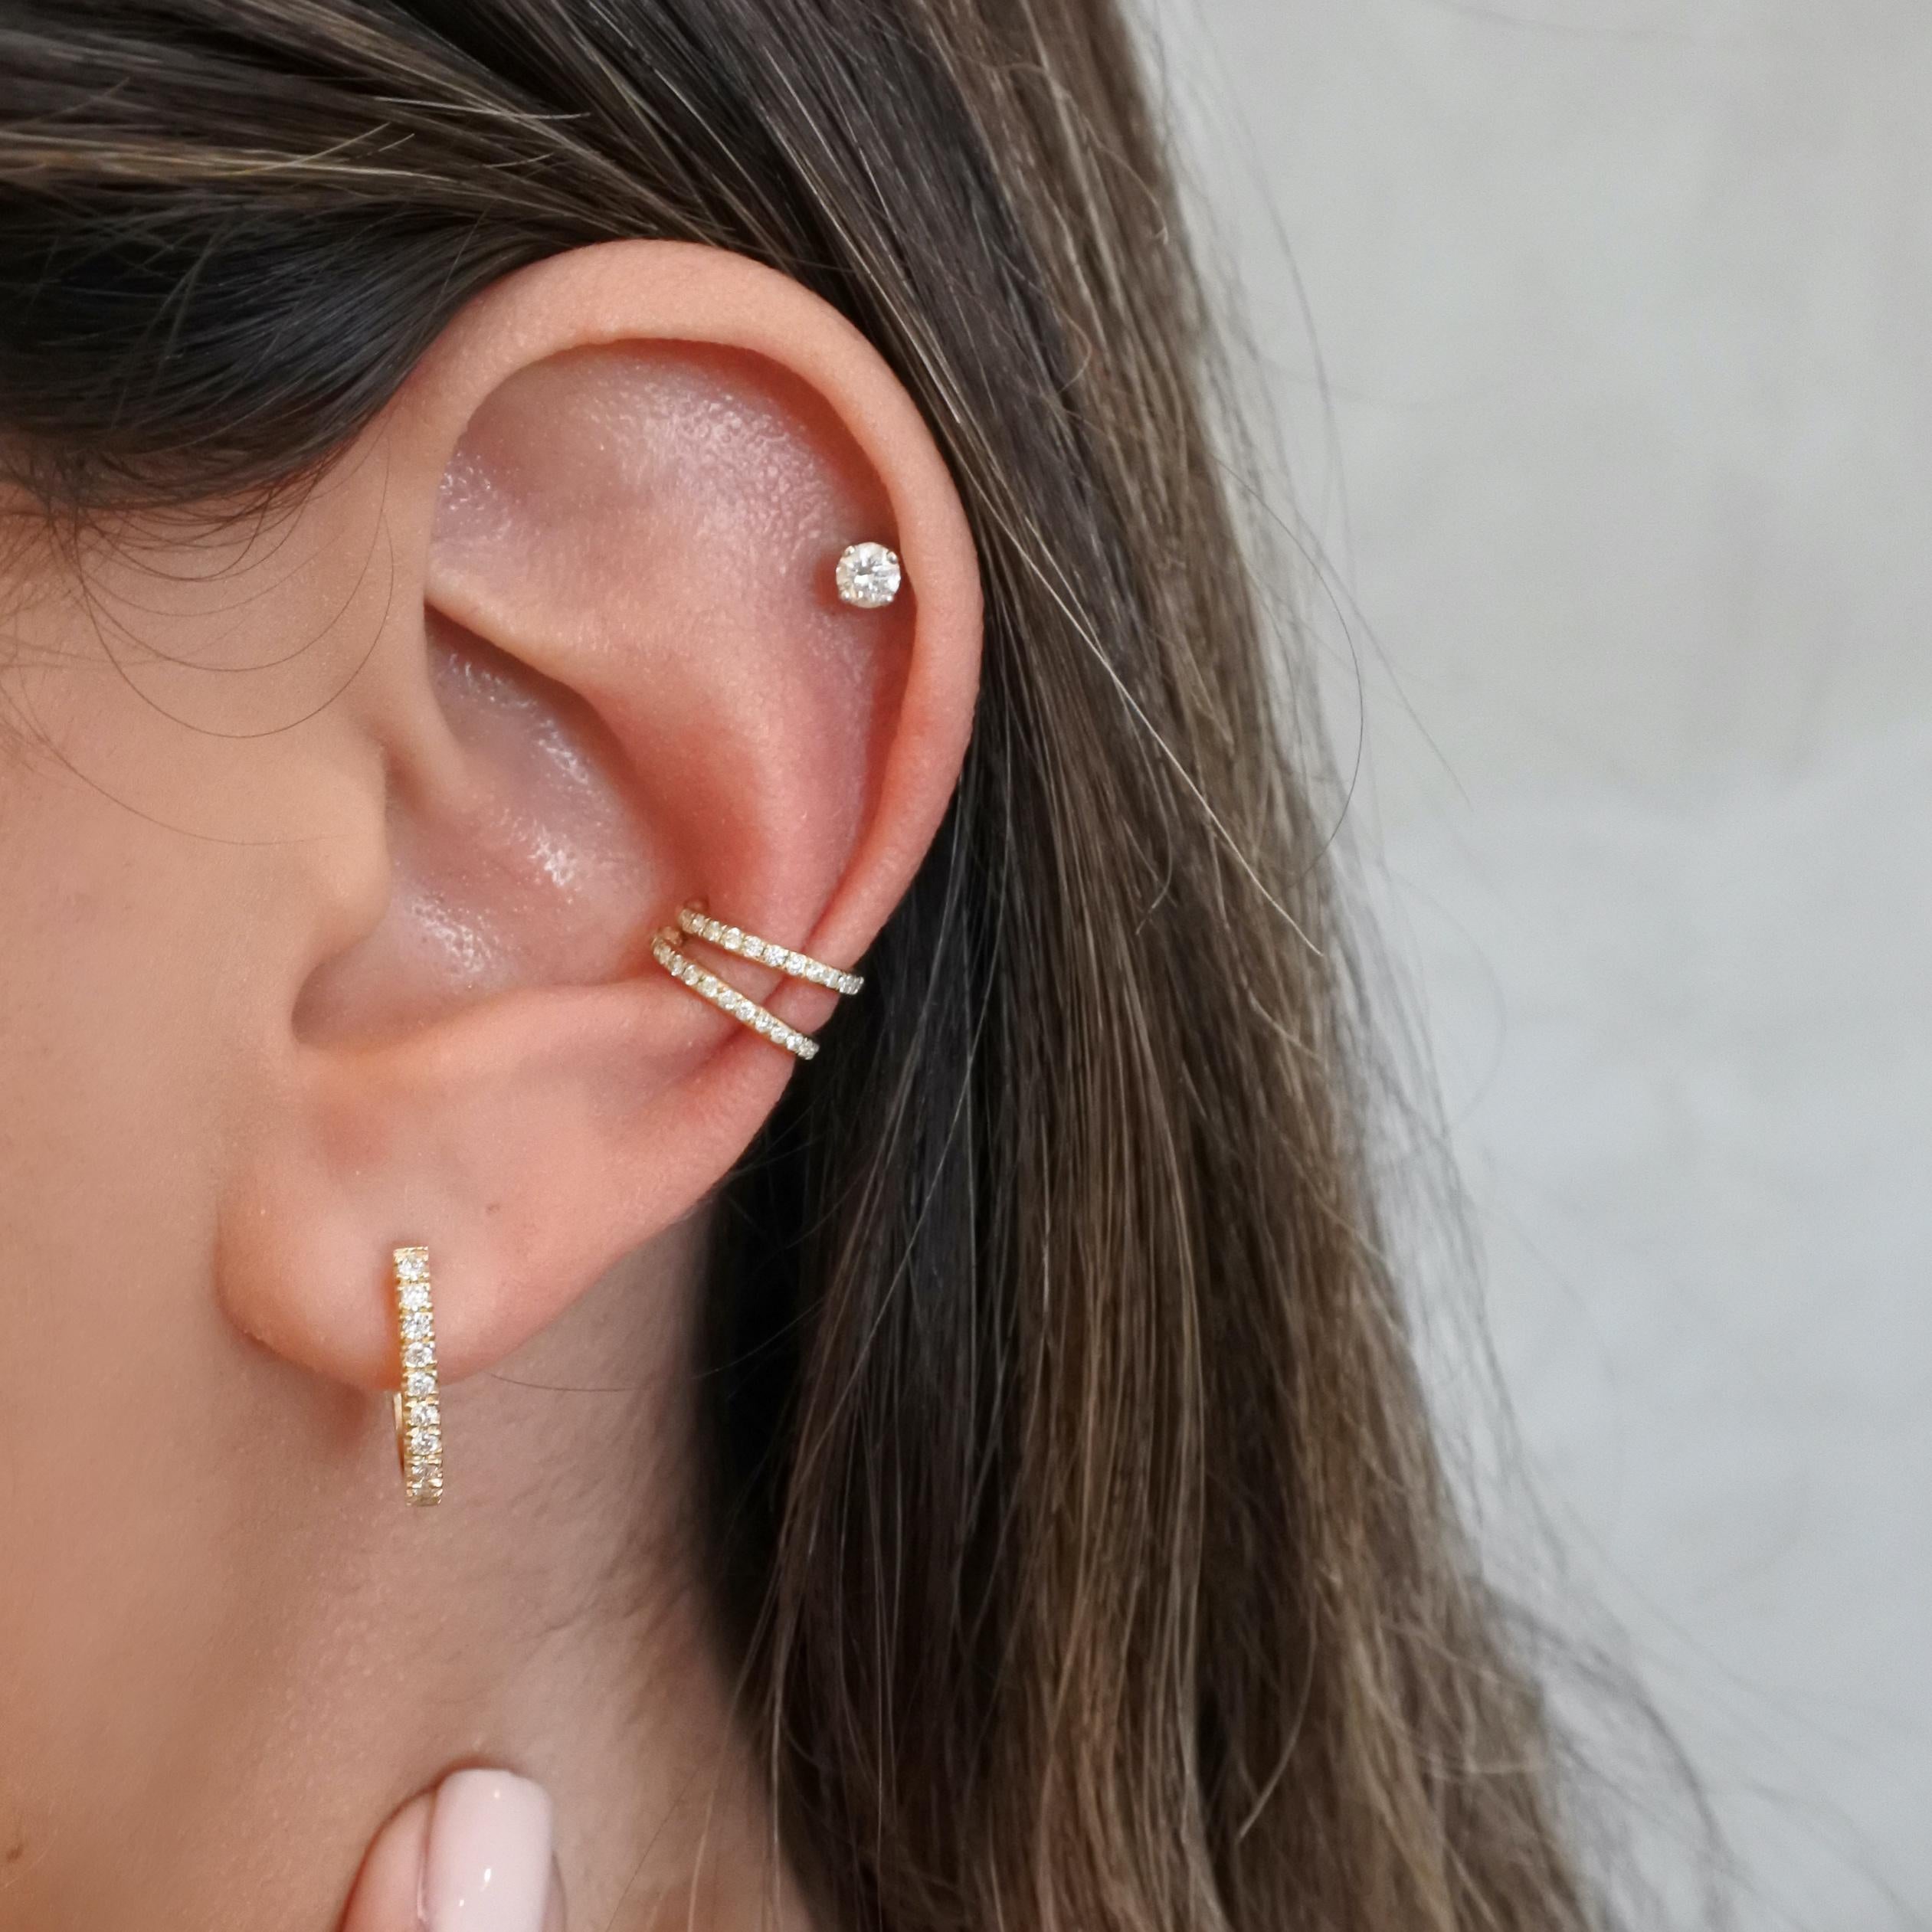 helix cuff earrings